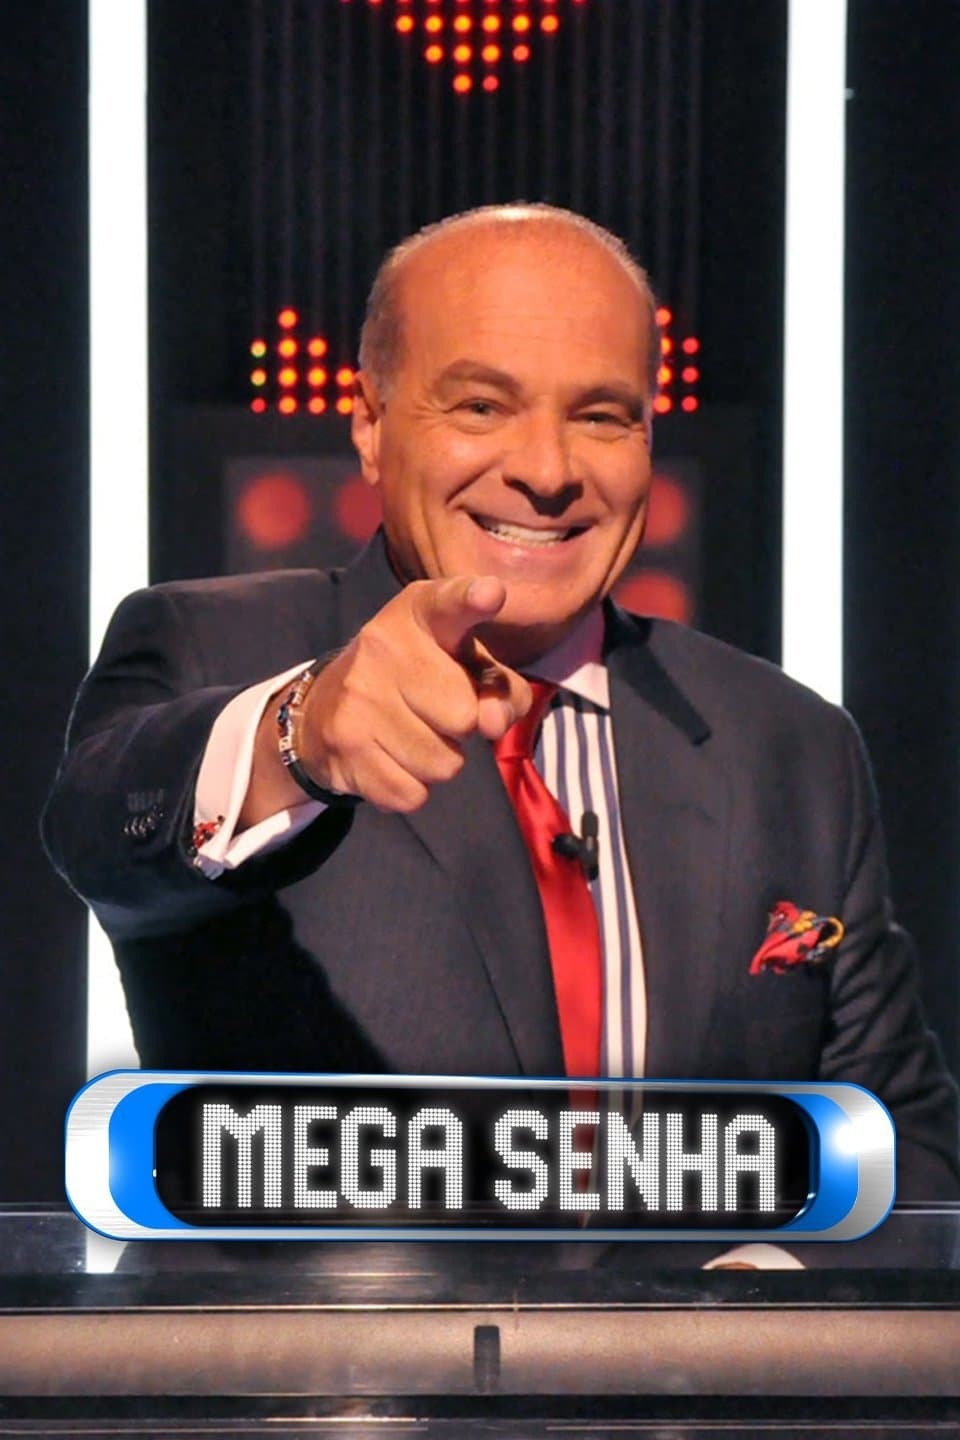 Mega Senha